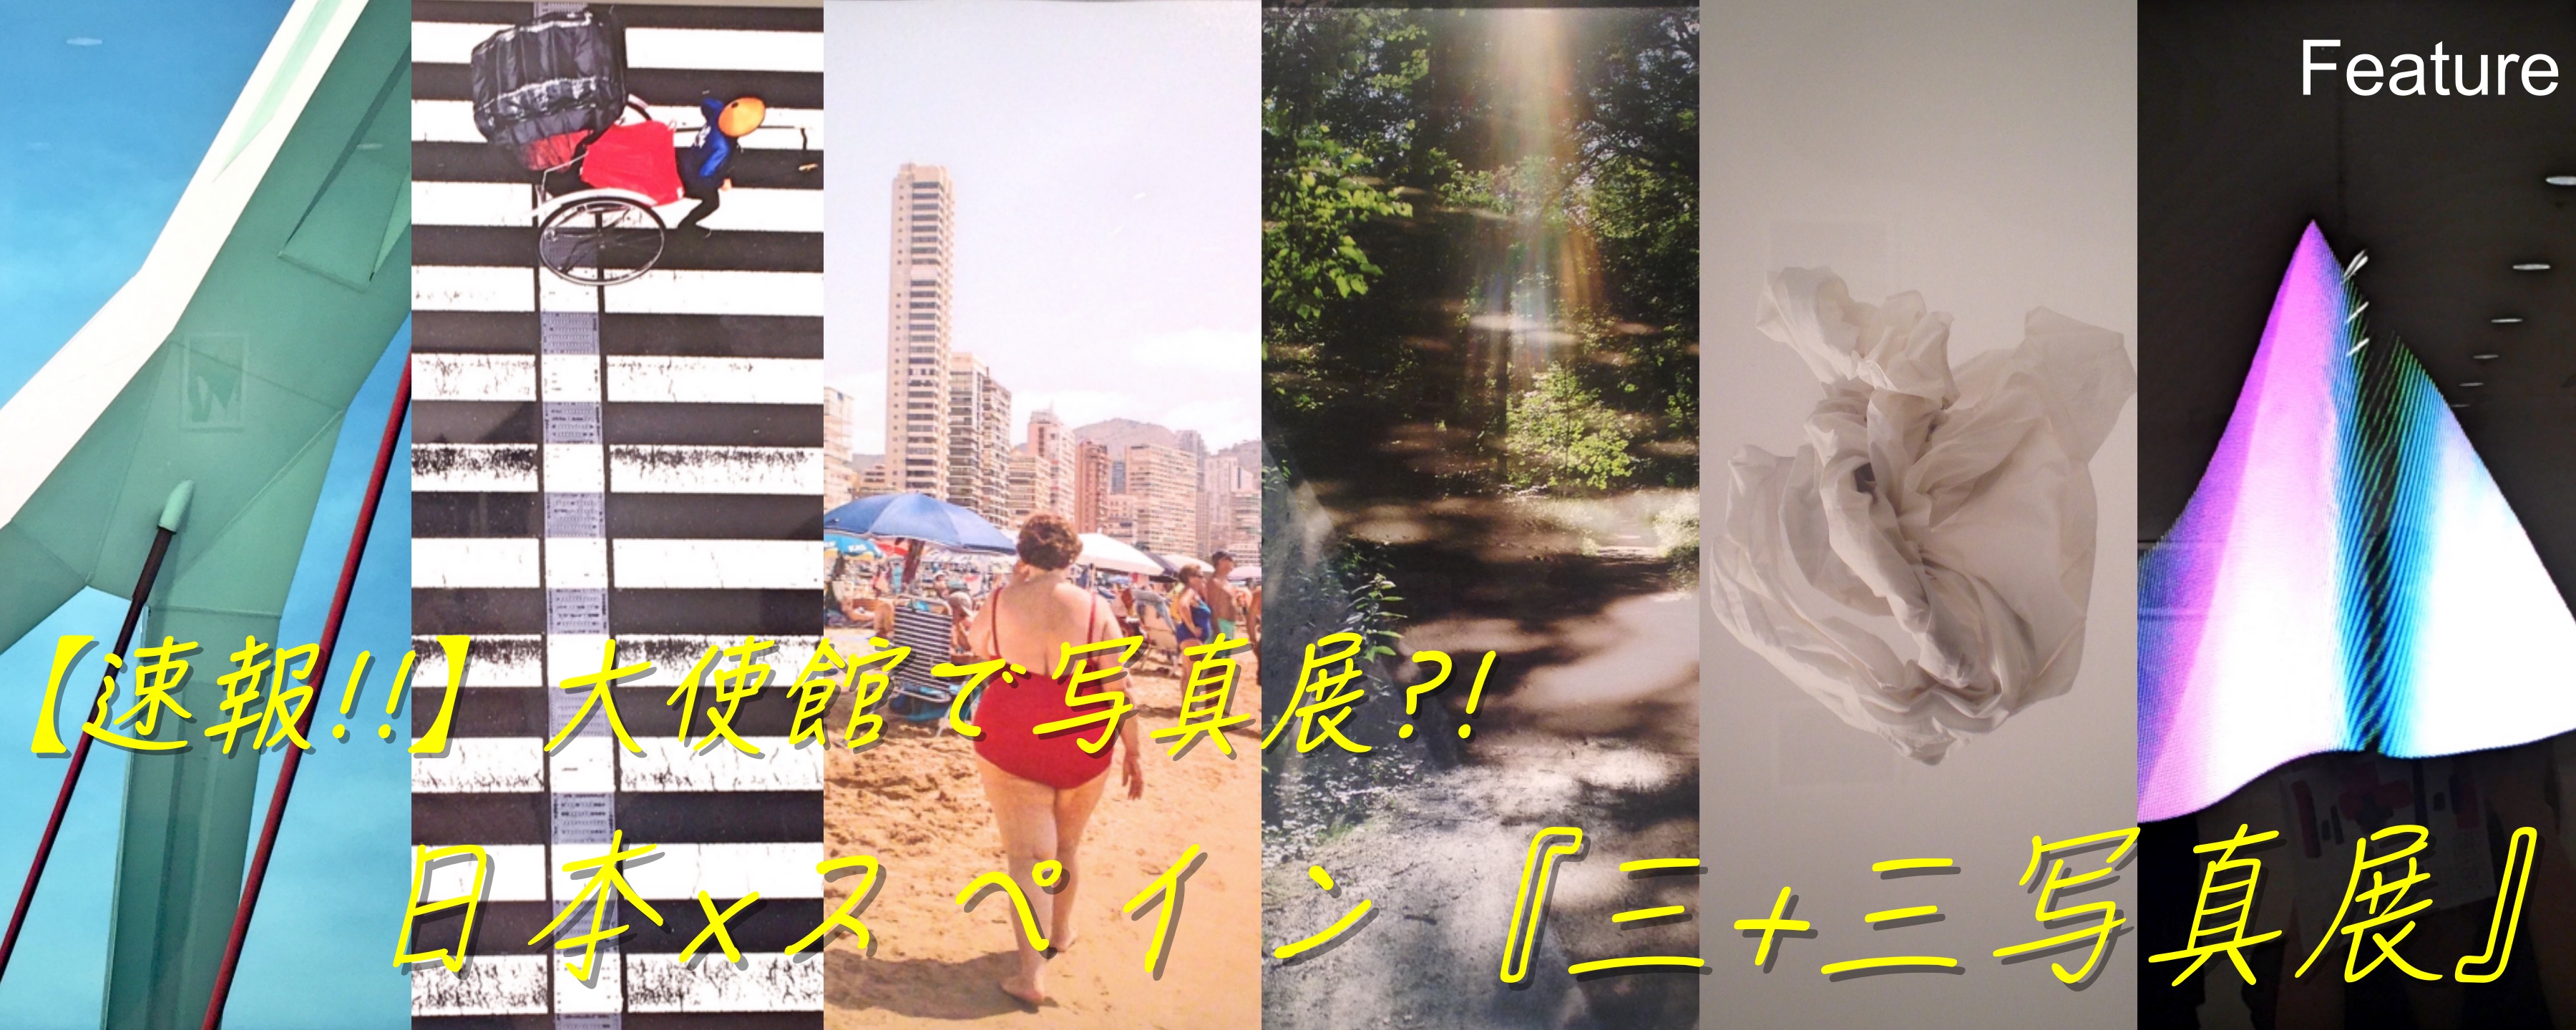 【速報!!】大使館で写真展?!  日本×スペイン『三+三写真展』